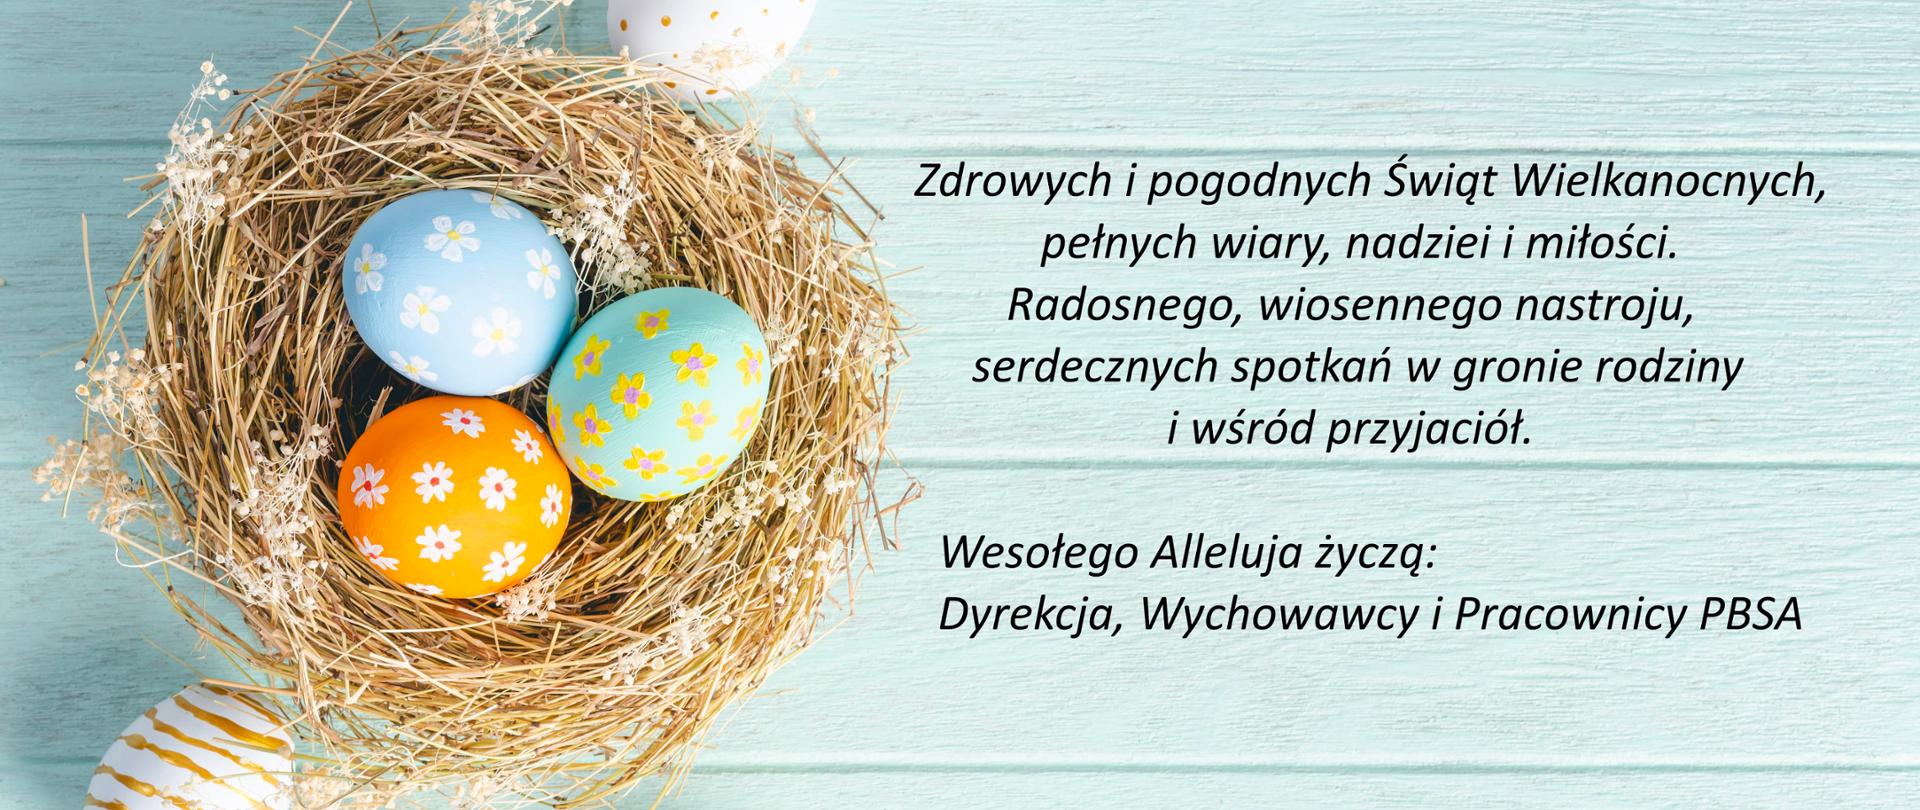 Wielkanoc. Jajka wielkanocne malowane w kwiatki w gniazdku na drewnianym błękitnym tle. Życzenia wielkanocne po prawej stronie obrazka.